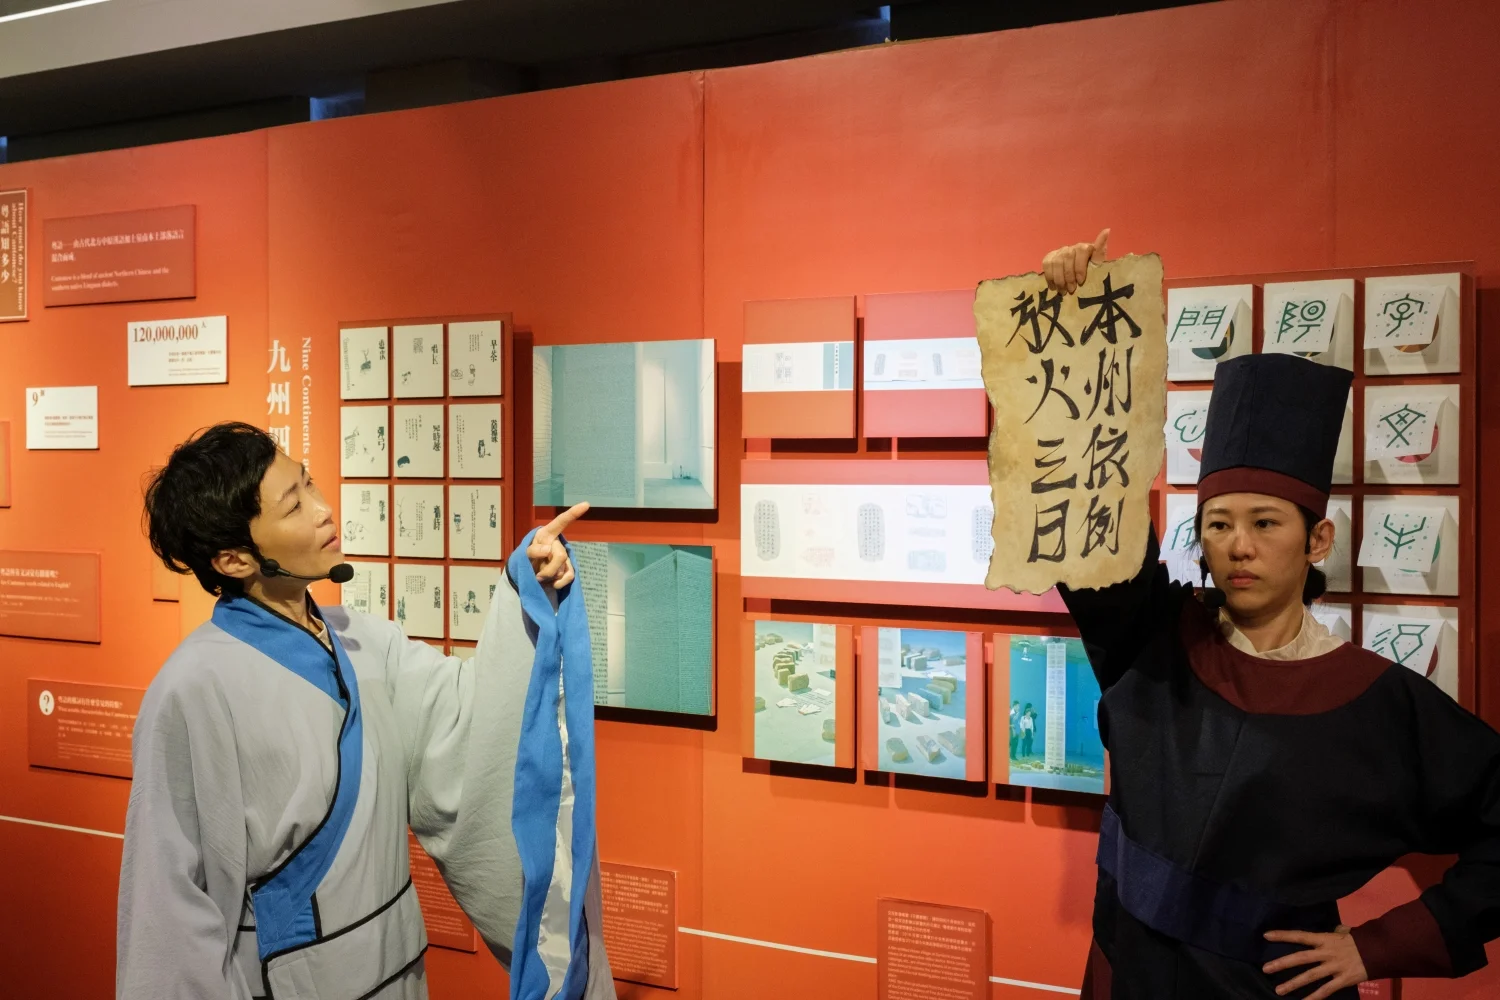 《州官放火》的故事被安排在漢字展覽館演出，拉近漢字與人們生活的關係。